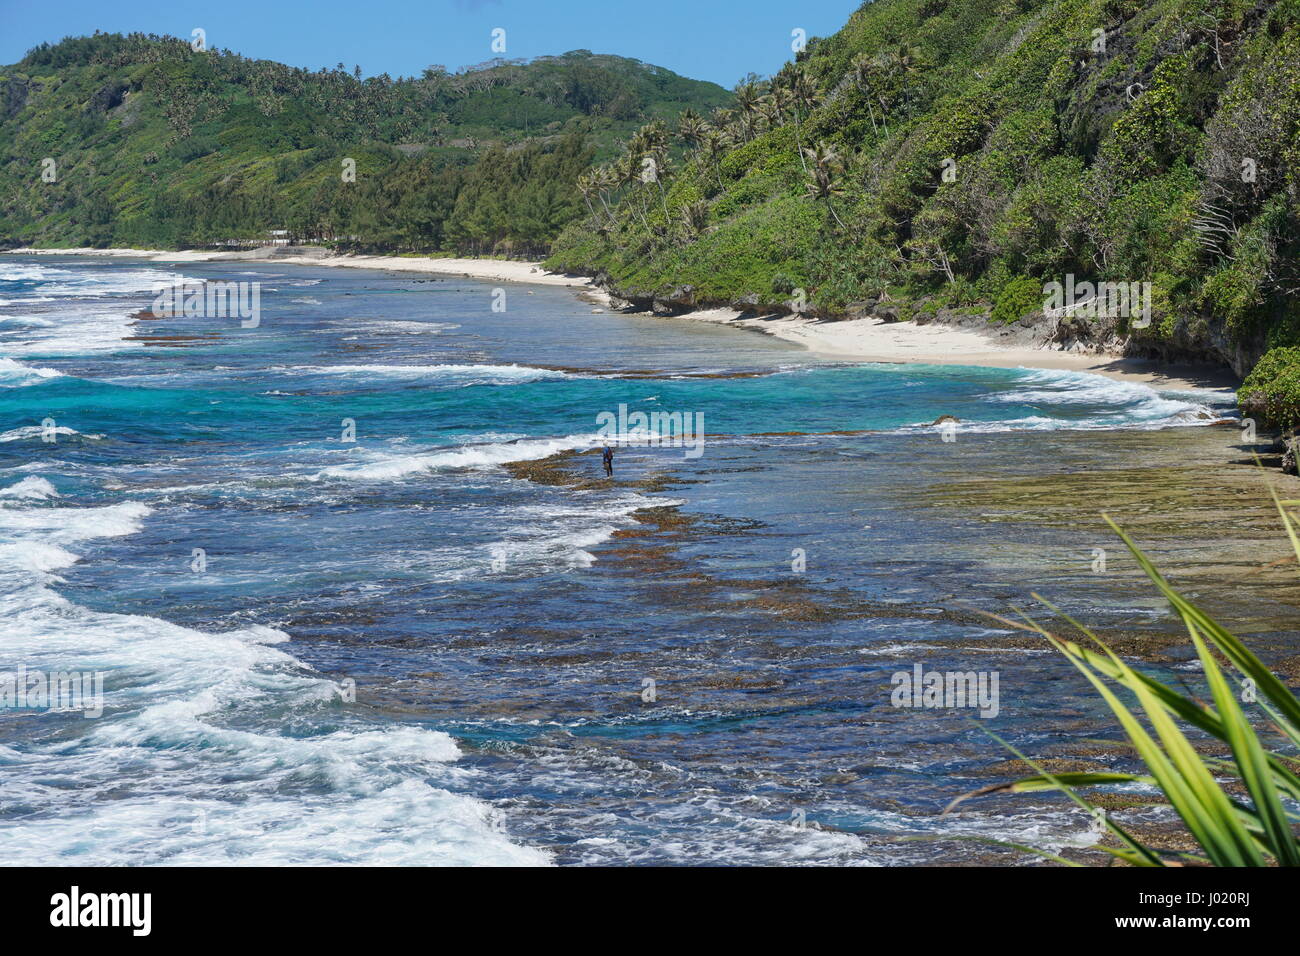 Küste der Insel Rurutu mit Strand und felsigen Küste, Französisch-Polynesien, Austal Archipel, Süd-Pazifik Stockfoto